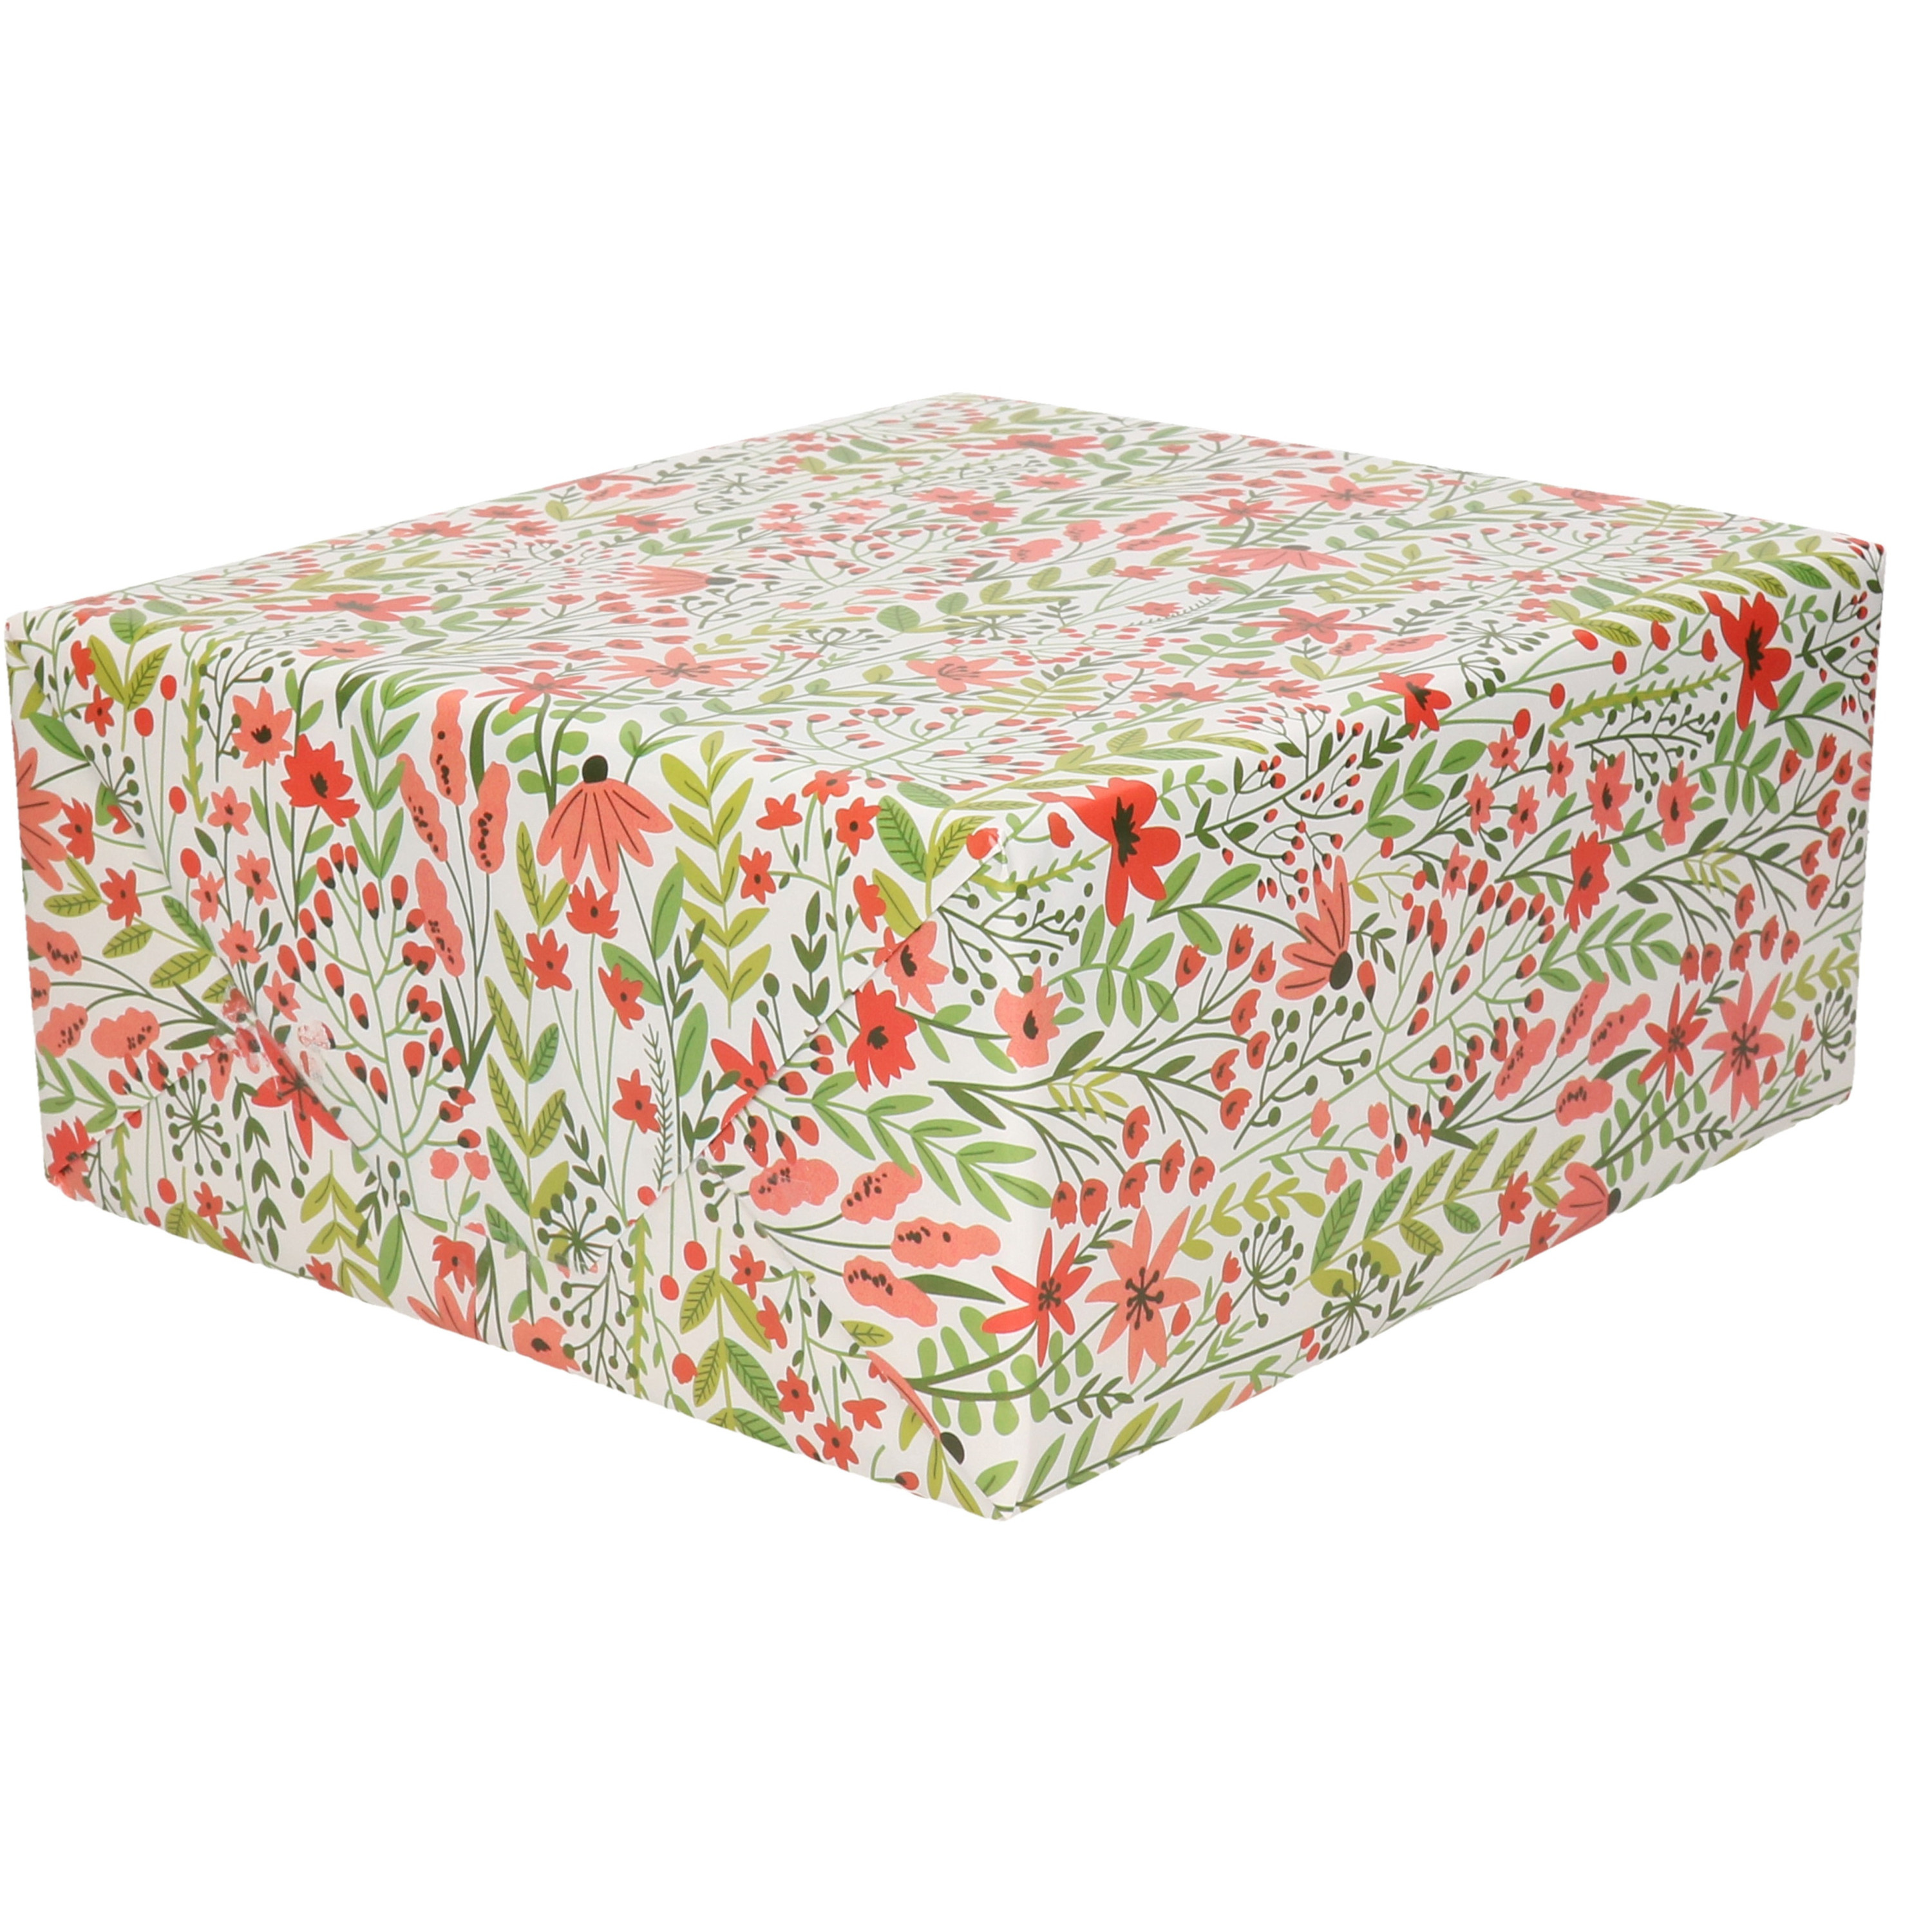 1x Rollen Inpakpapier/cadeaupapier creme met rode bloemen en groene takken 200 x 70 cm